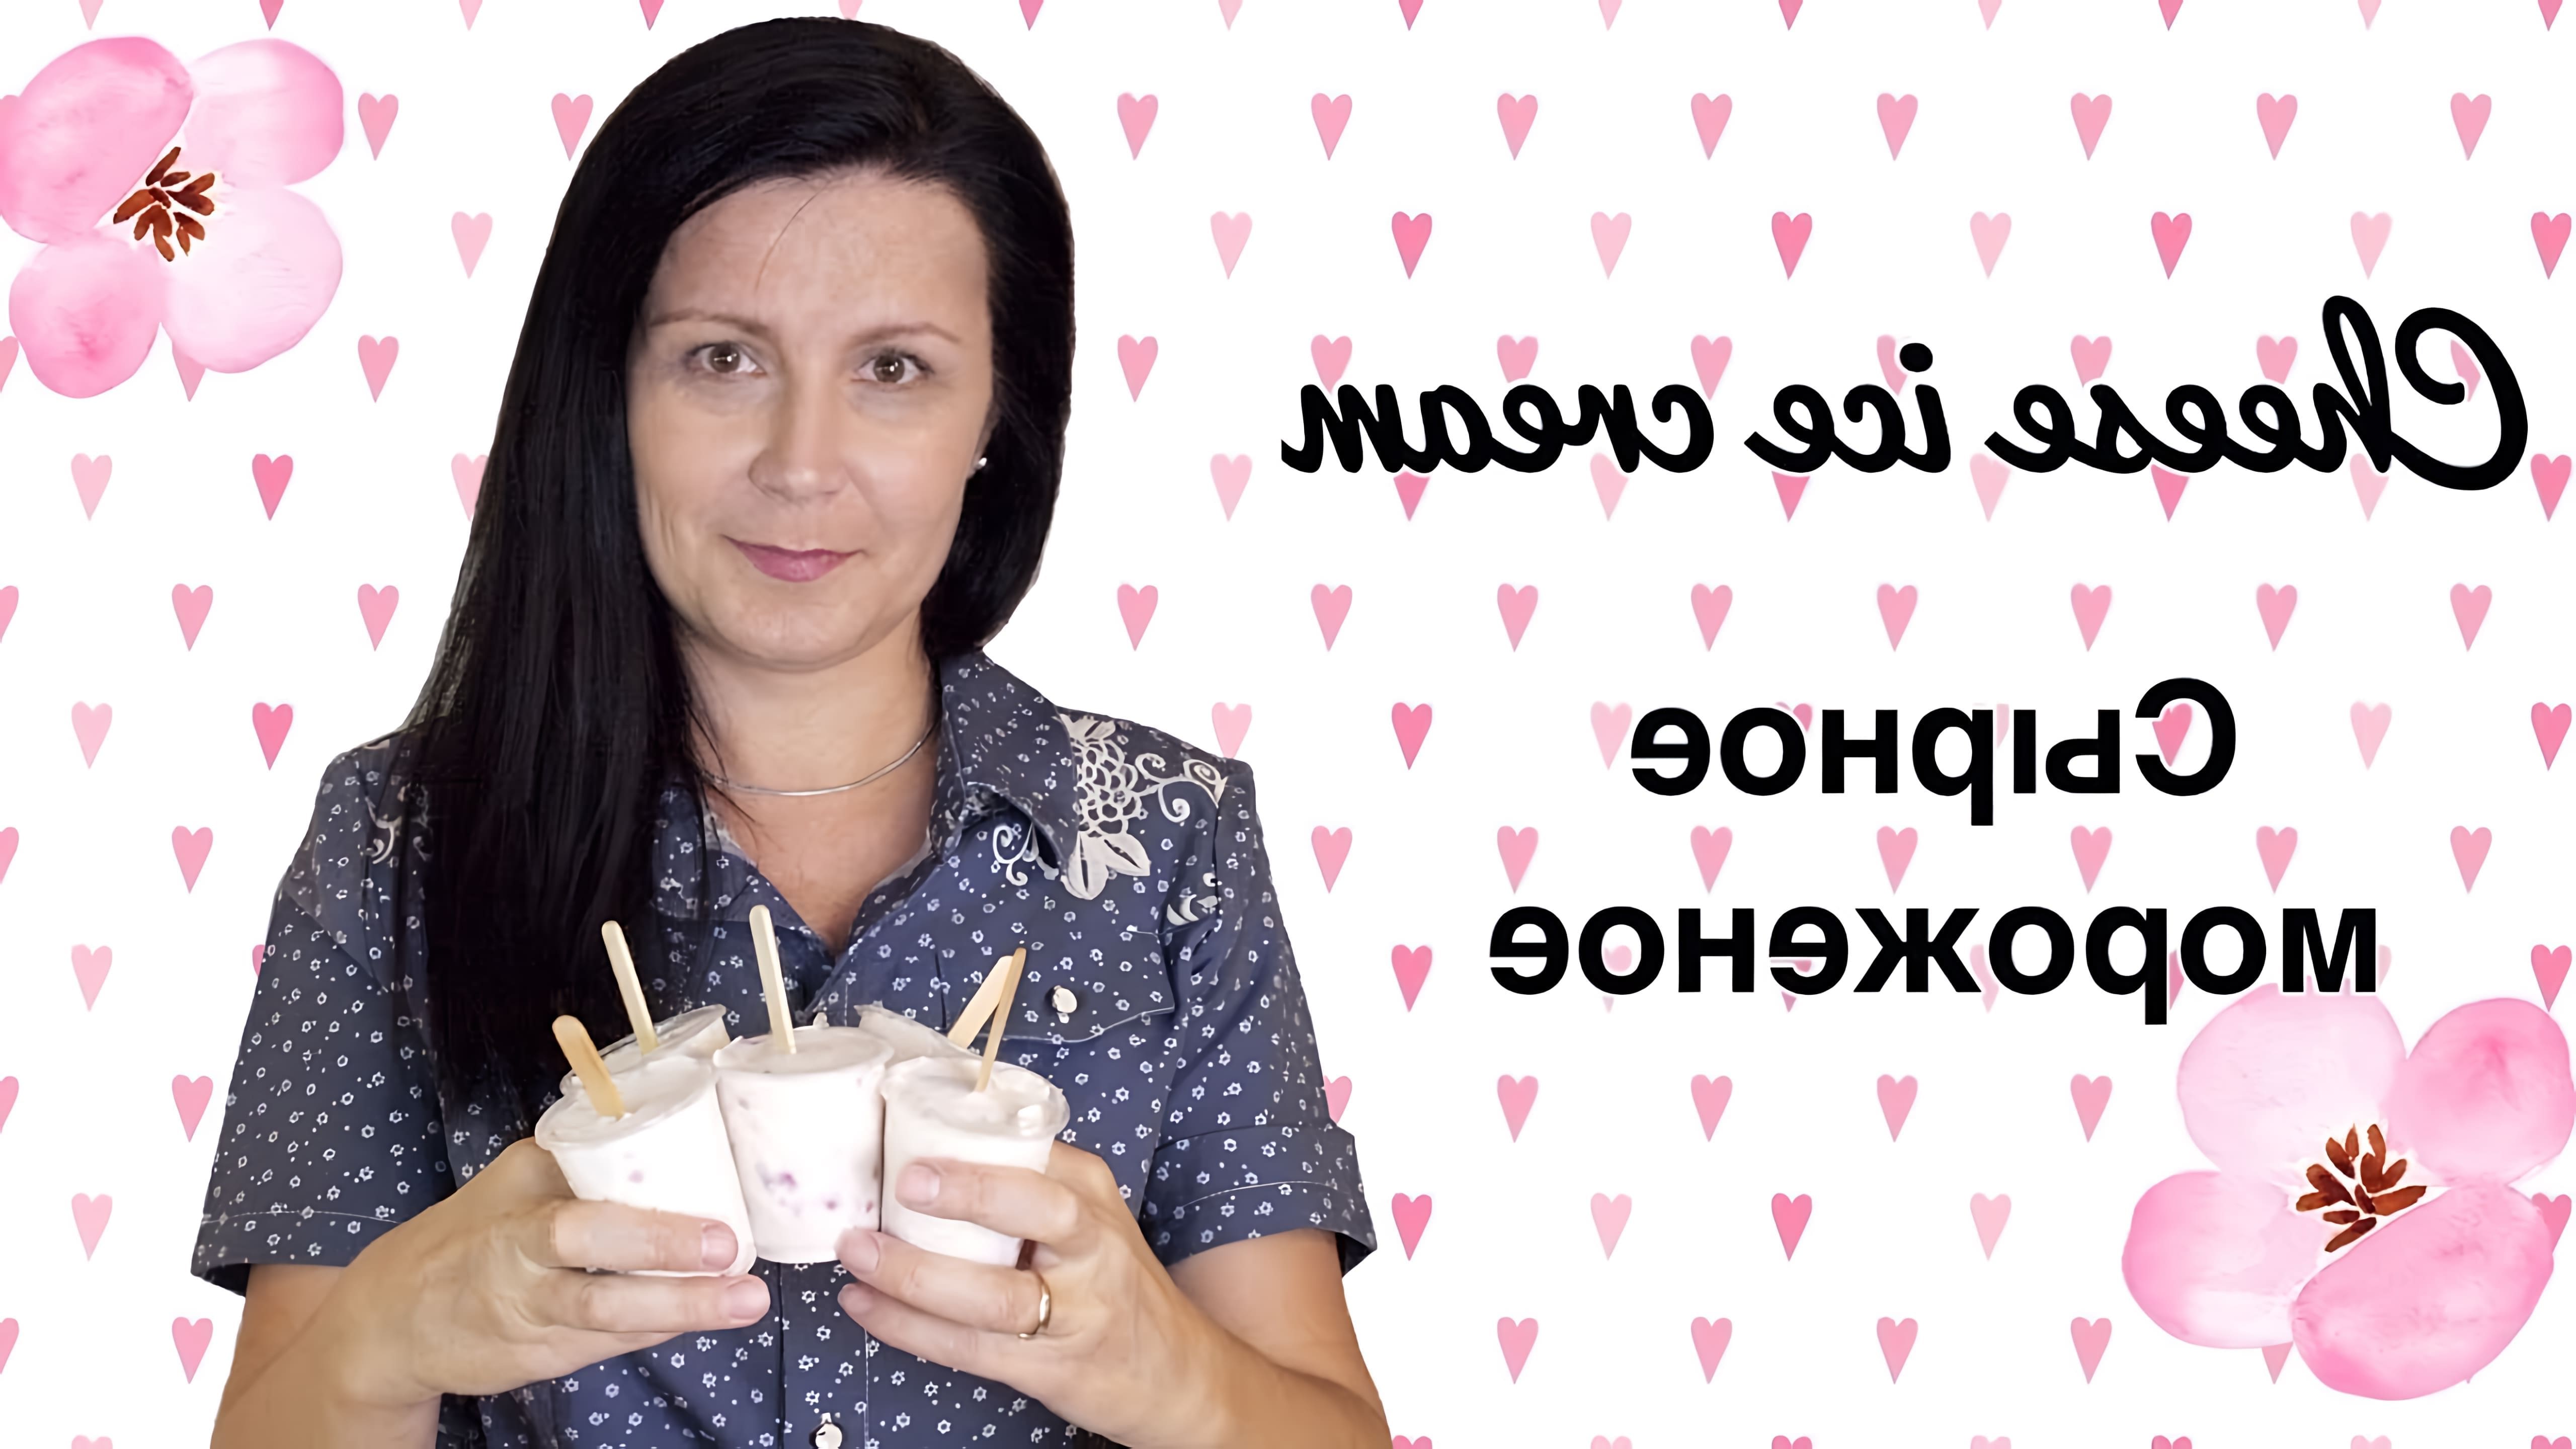 В данном видео Елена Баженова представляет рецепт сырно-сливочного мороженого